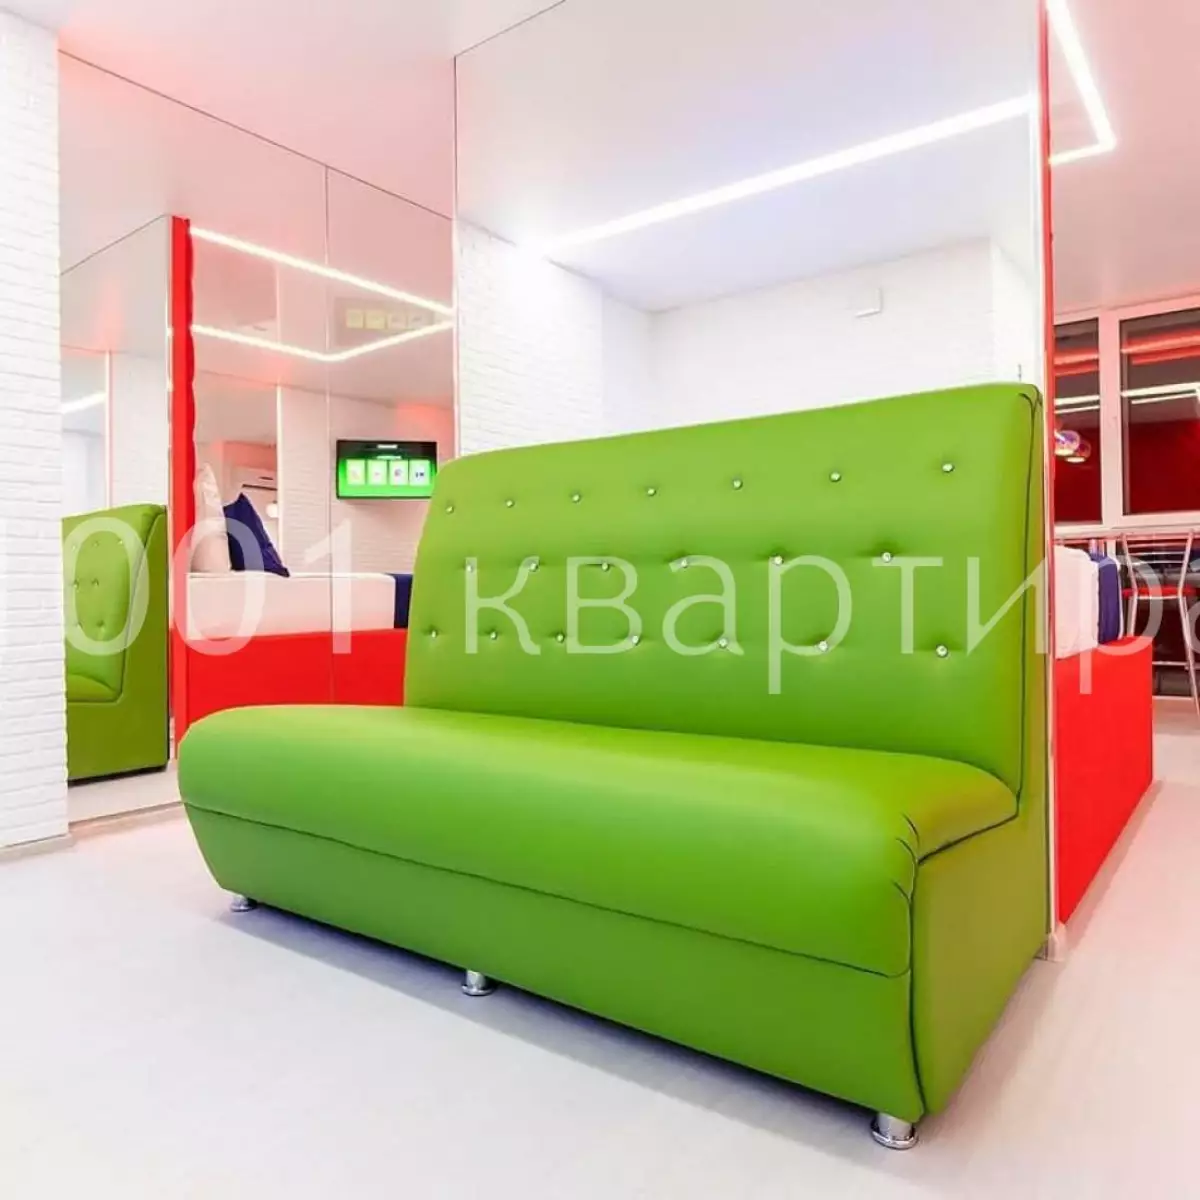 Вариант #128403 для аренды посуточно в Казани Галимжана баруди, д.4/2 на 3 гостей - фото 2